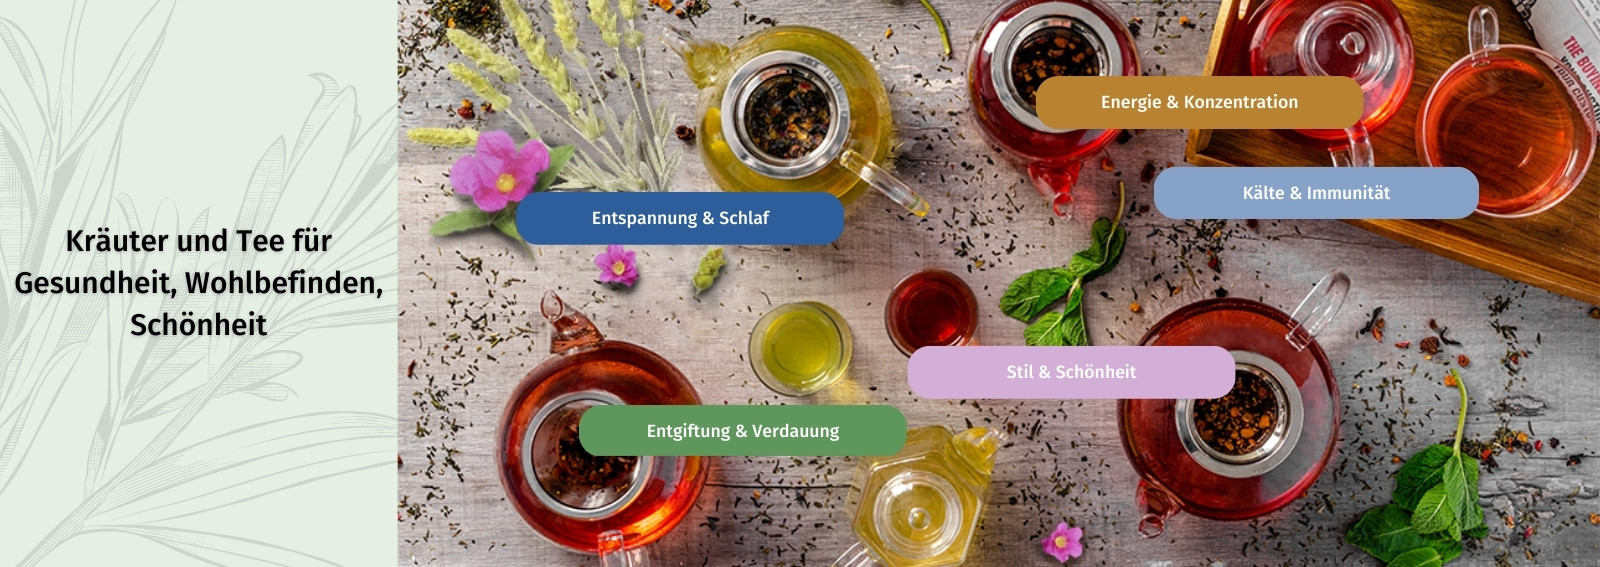 Tradition und Innovation, Kräutermischungen und Tee von hervorragender Qualität für Gesundheit, Wellness und Schönheit